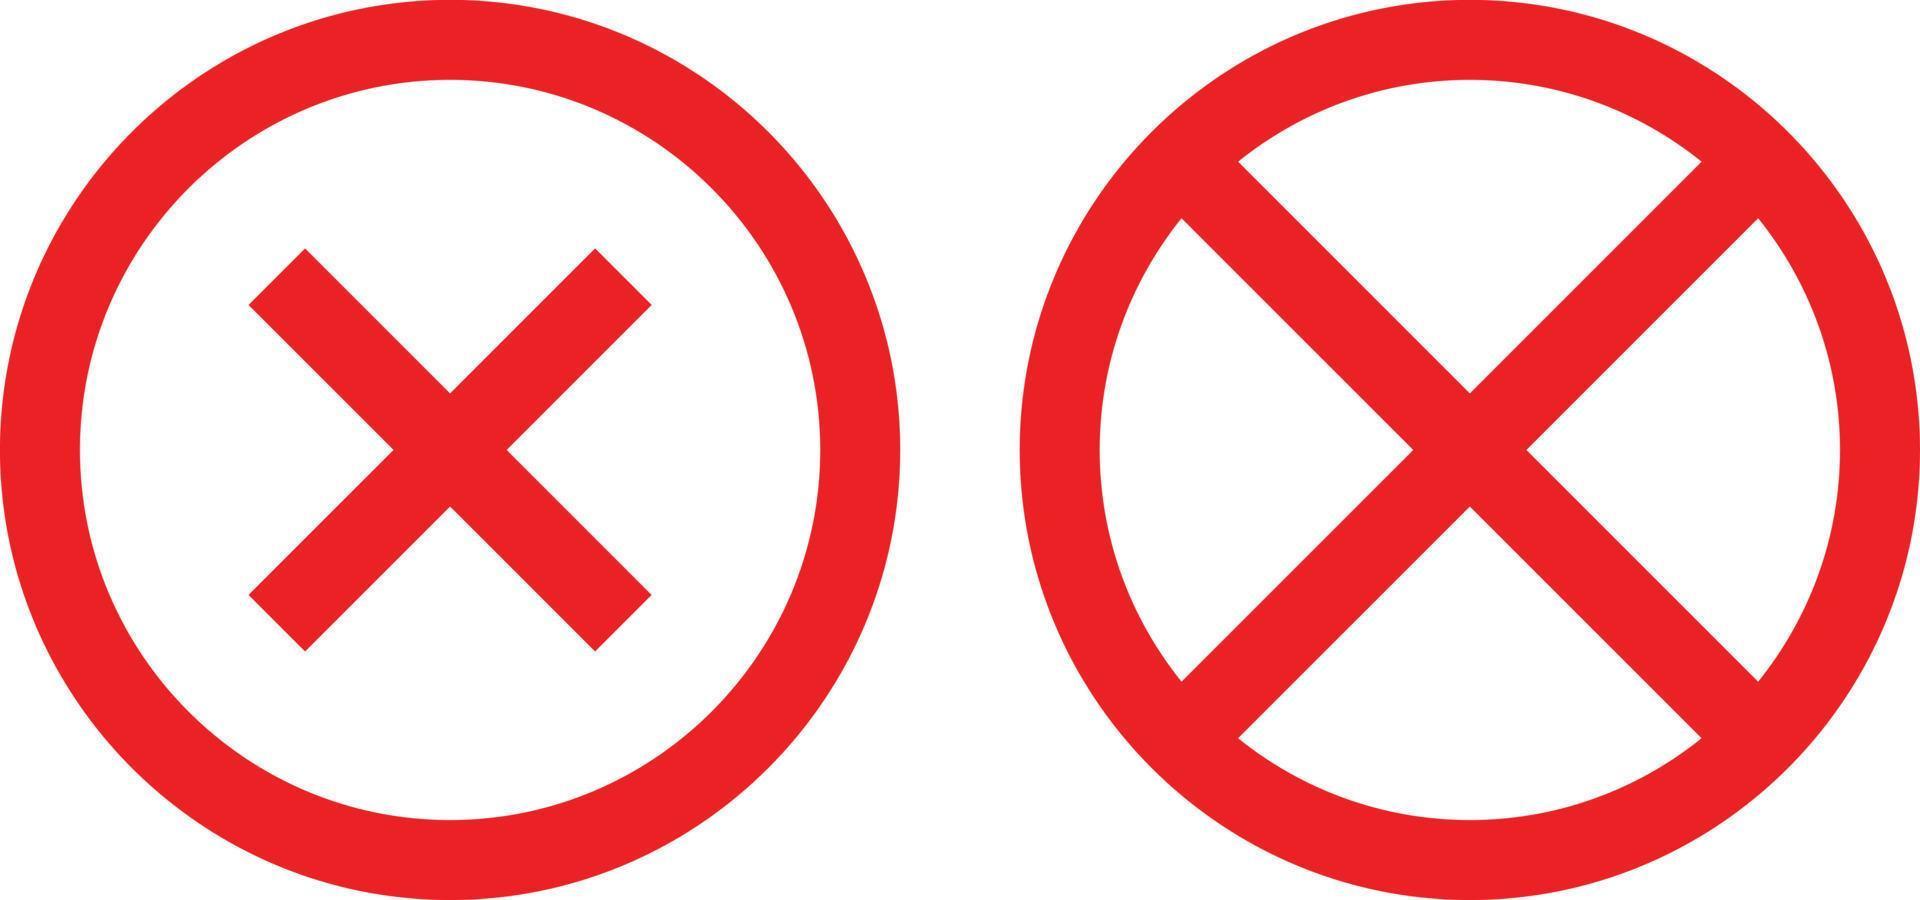 två korsa symbol i cirkel form. restriktion tecken ikoner. förbud symbol uppsättning. vektor